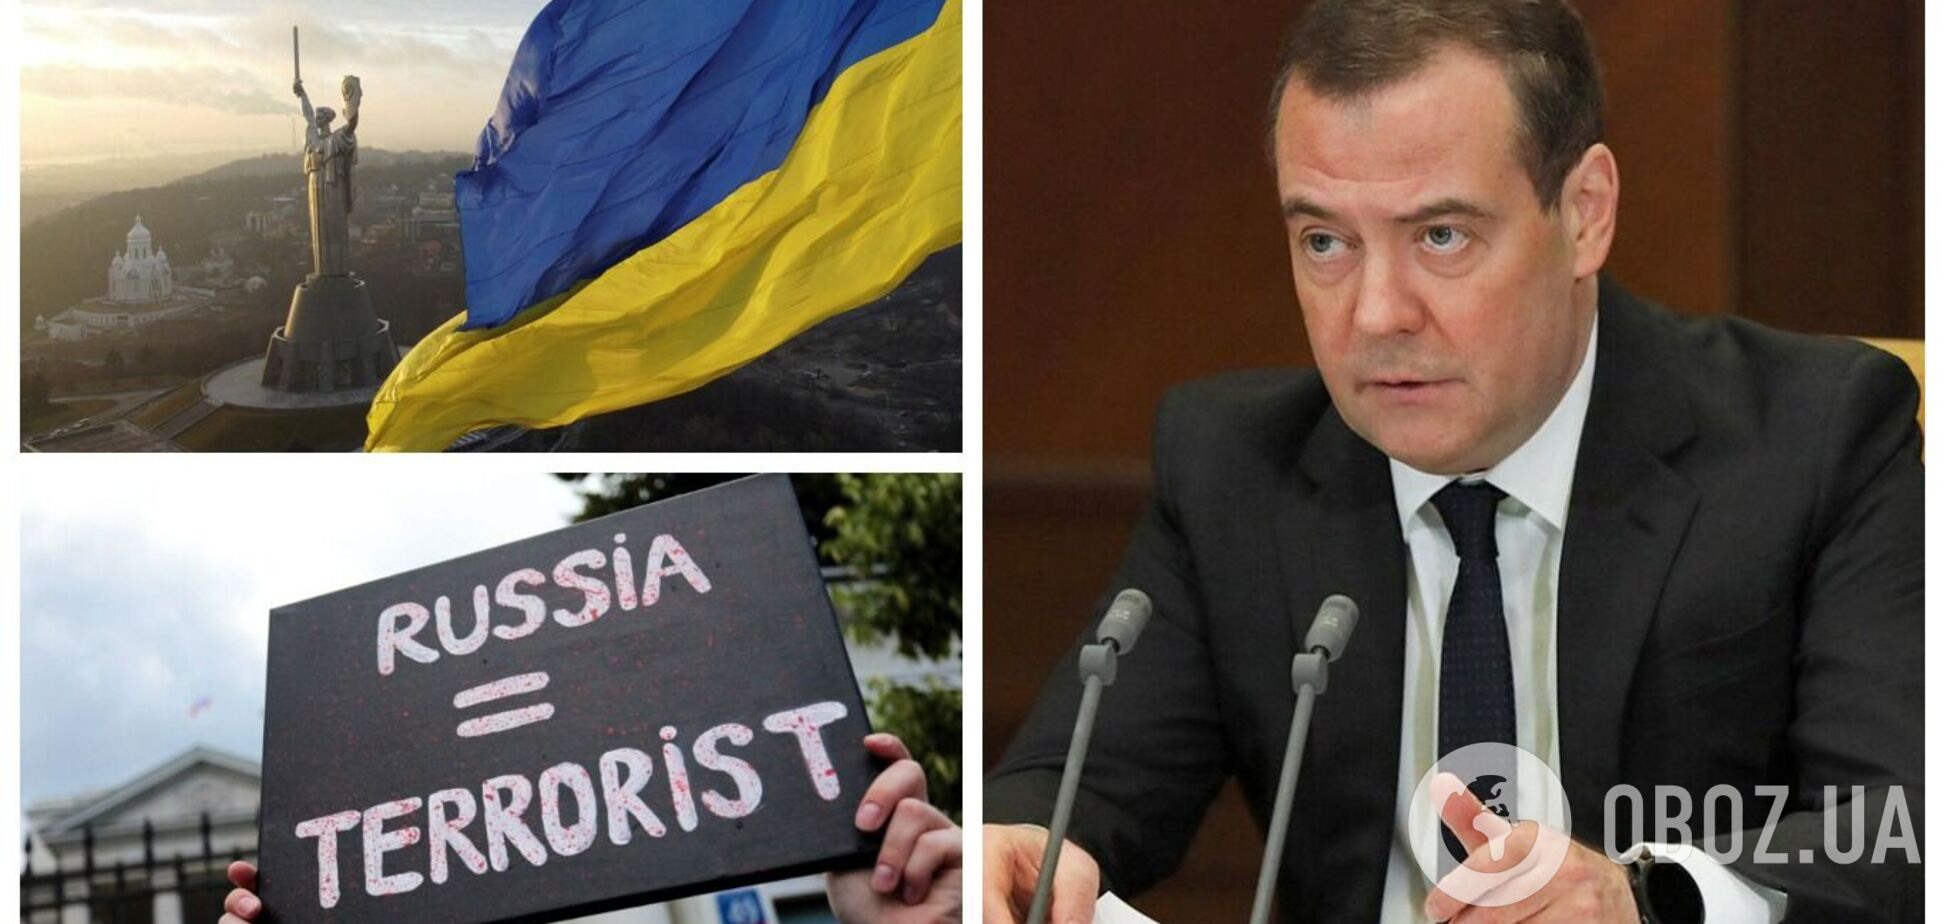 'Украина – это часть России': Медведев устроил новую 'имперскую' истерику и заговорил о 'вымышленных' границах